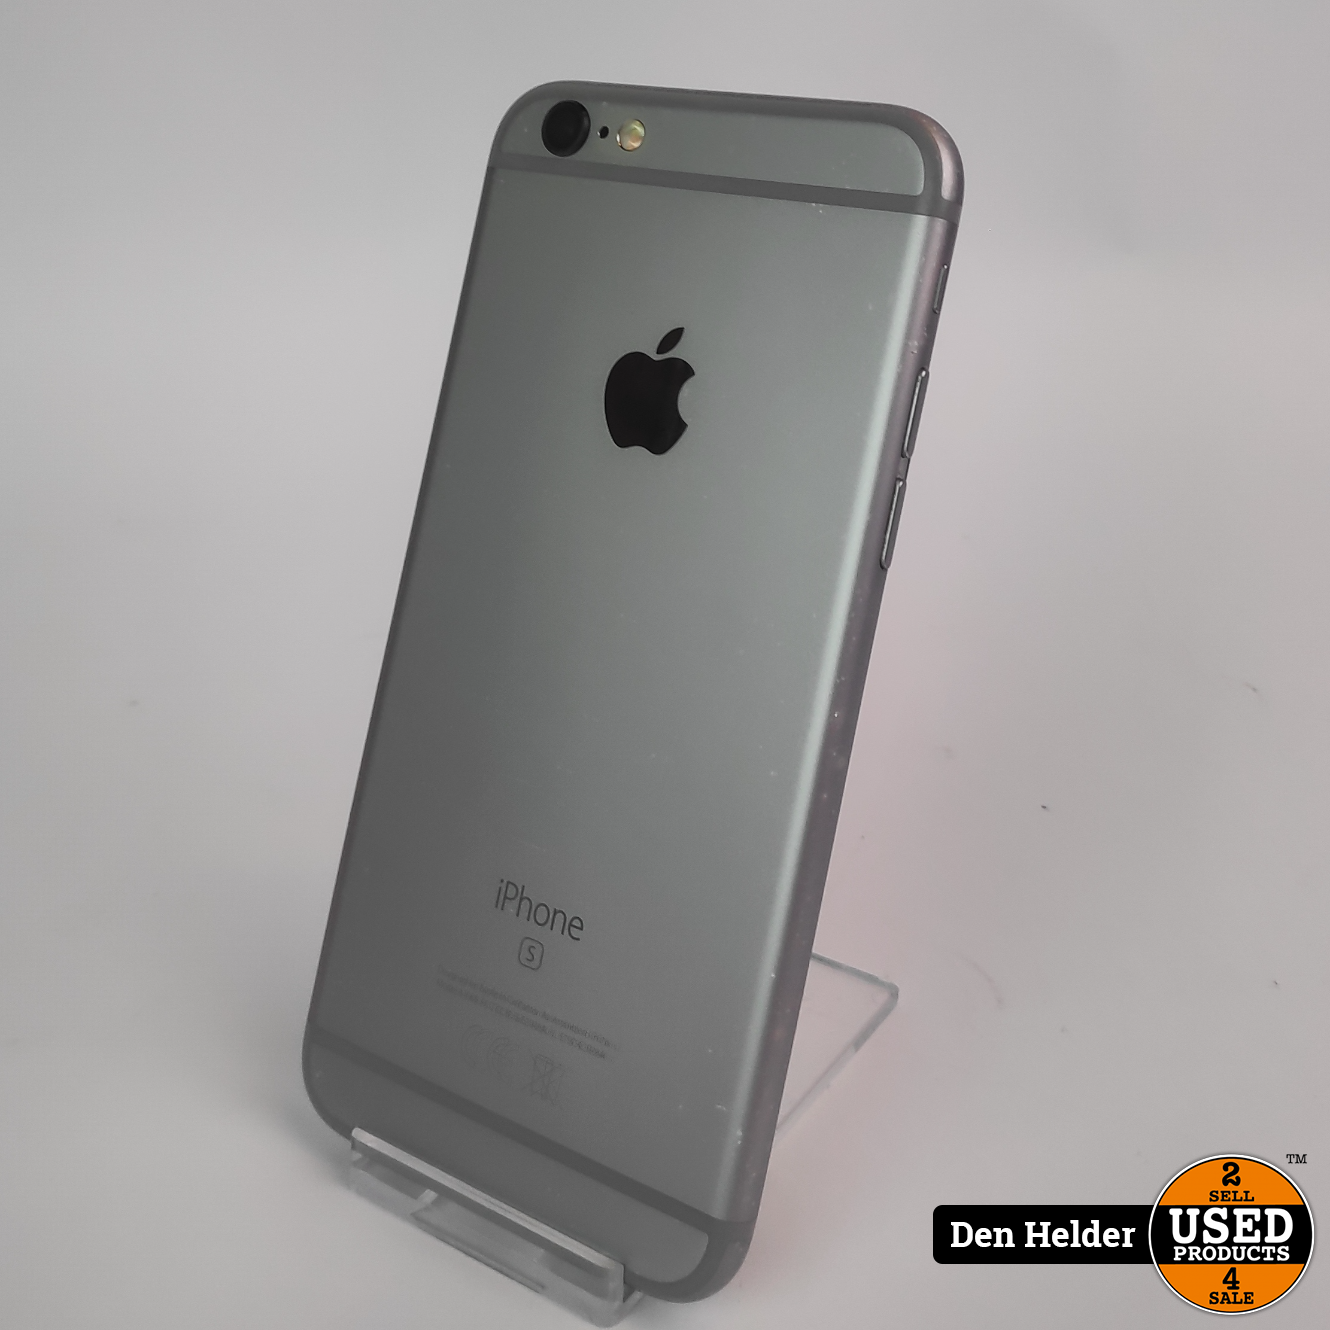 Uitdrukkelijk Uitputting prieel Apple iPhone 6s 32GB Accu 88 - In Nette Staat - Used Products Den Helder